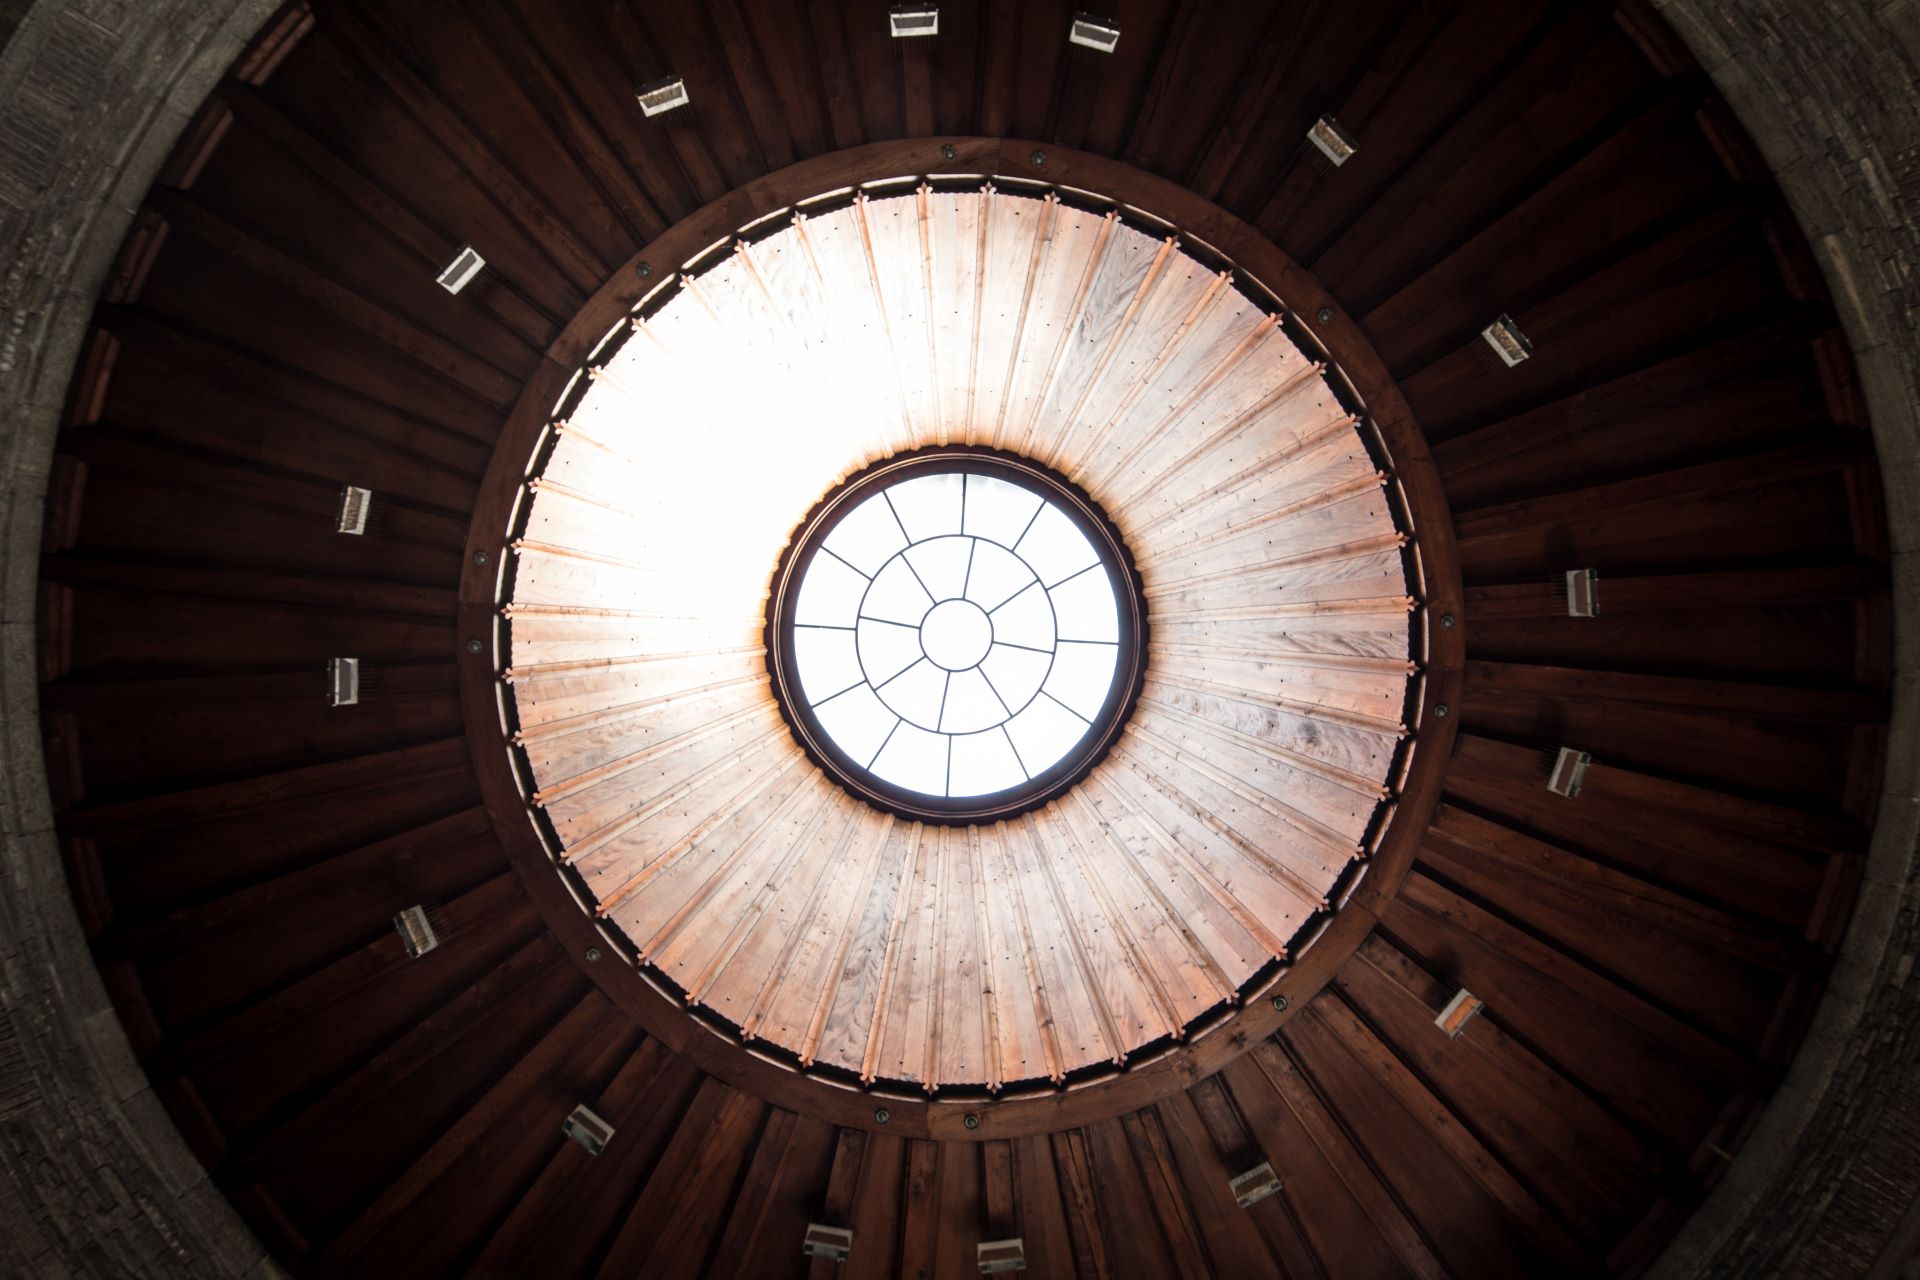 Architektonische Nahaufnahme eines kreisförmigen Oberlichts in einer hölzernen Kuppeldecke mit geometrischem Muster